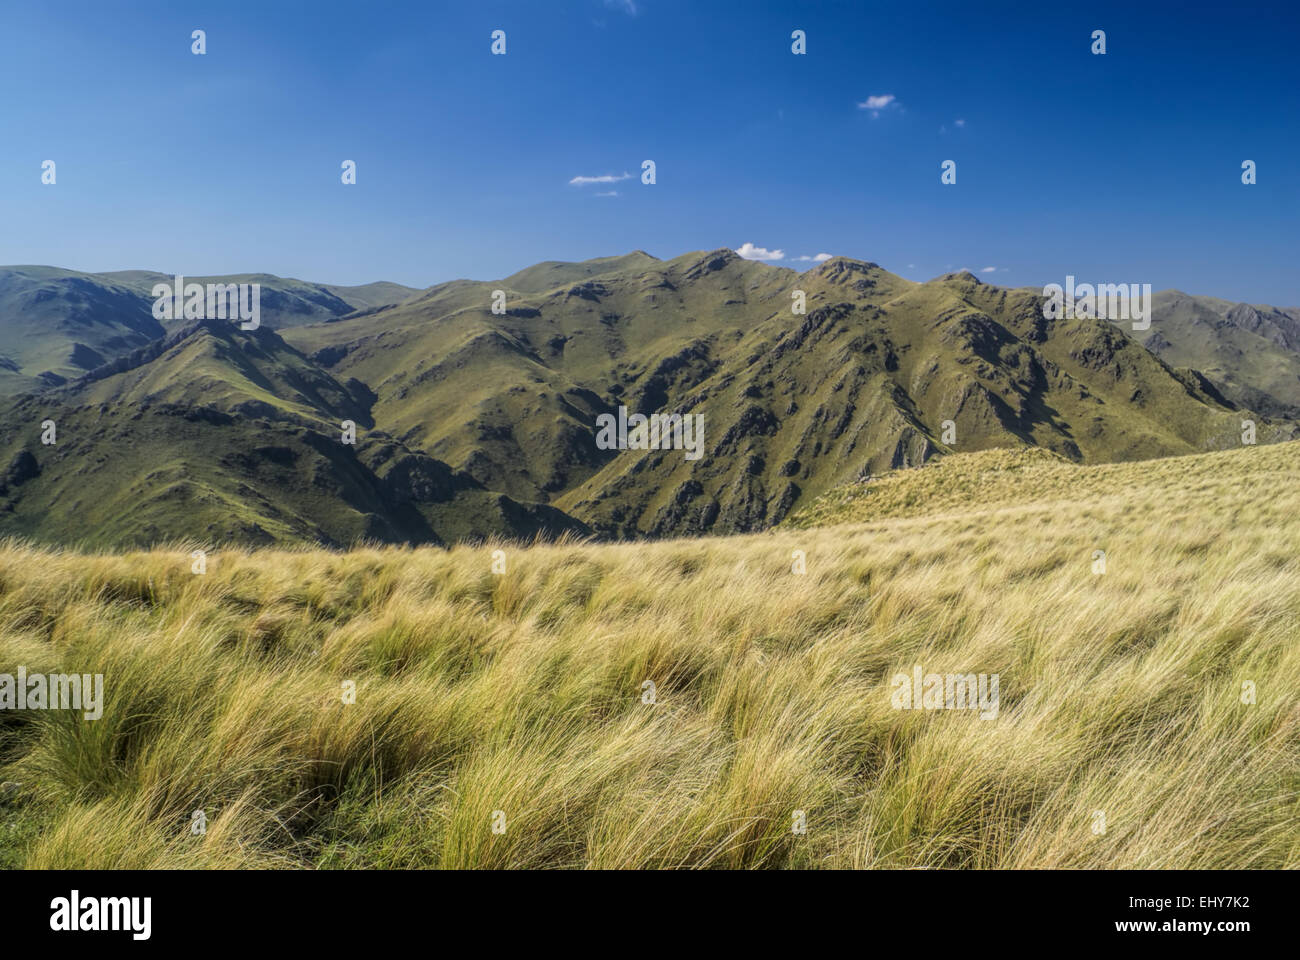 Picturesque landscape in Capilla del Monte in Argentina, South America Stock Photo